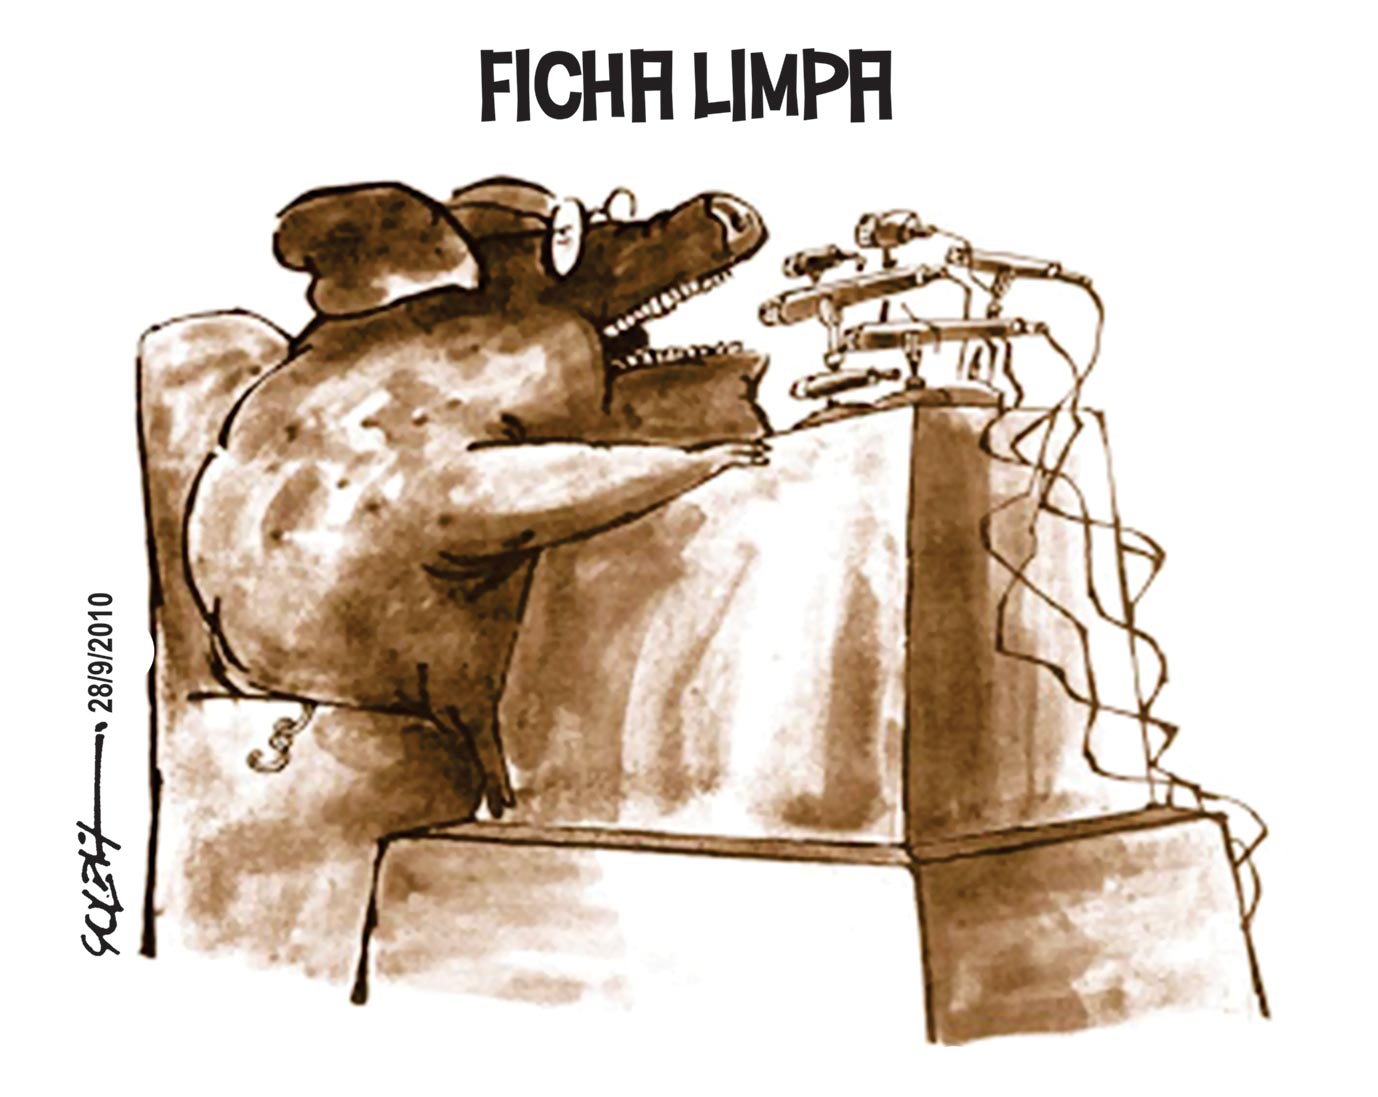 ficha-limpa-28-9-2010